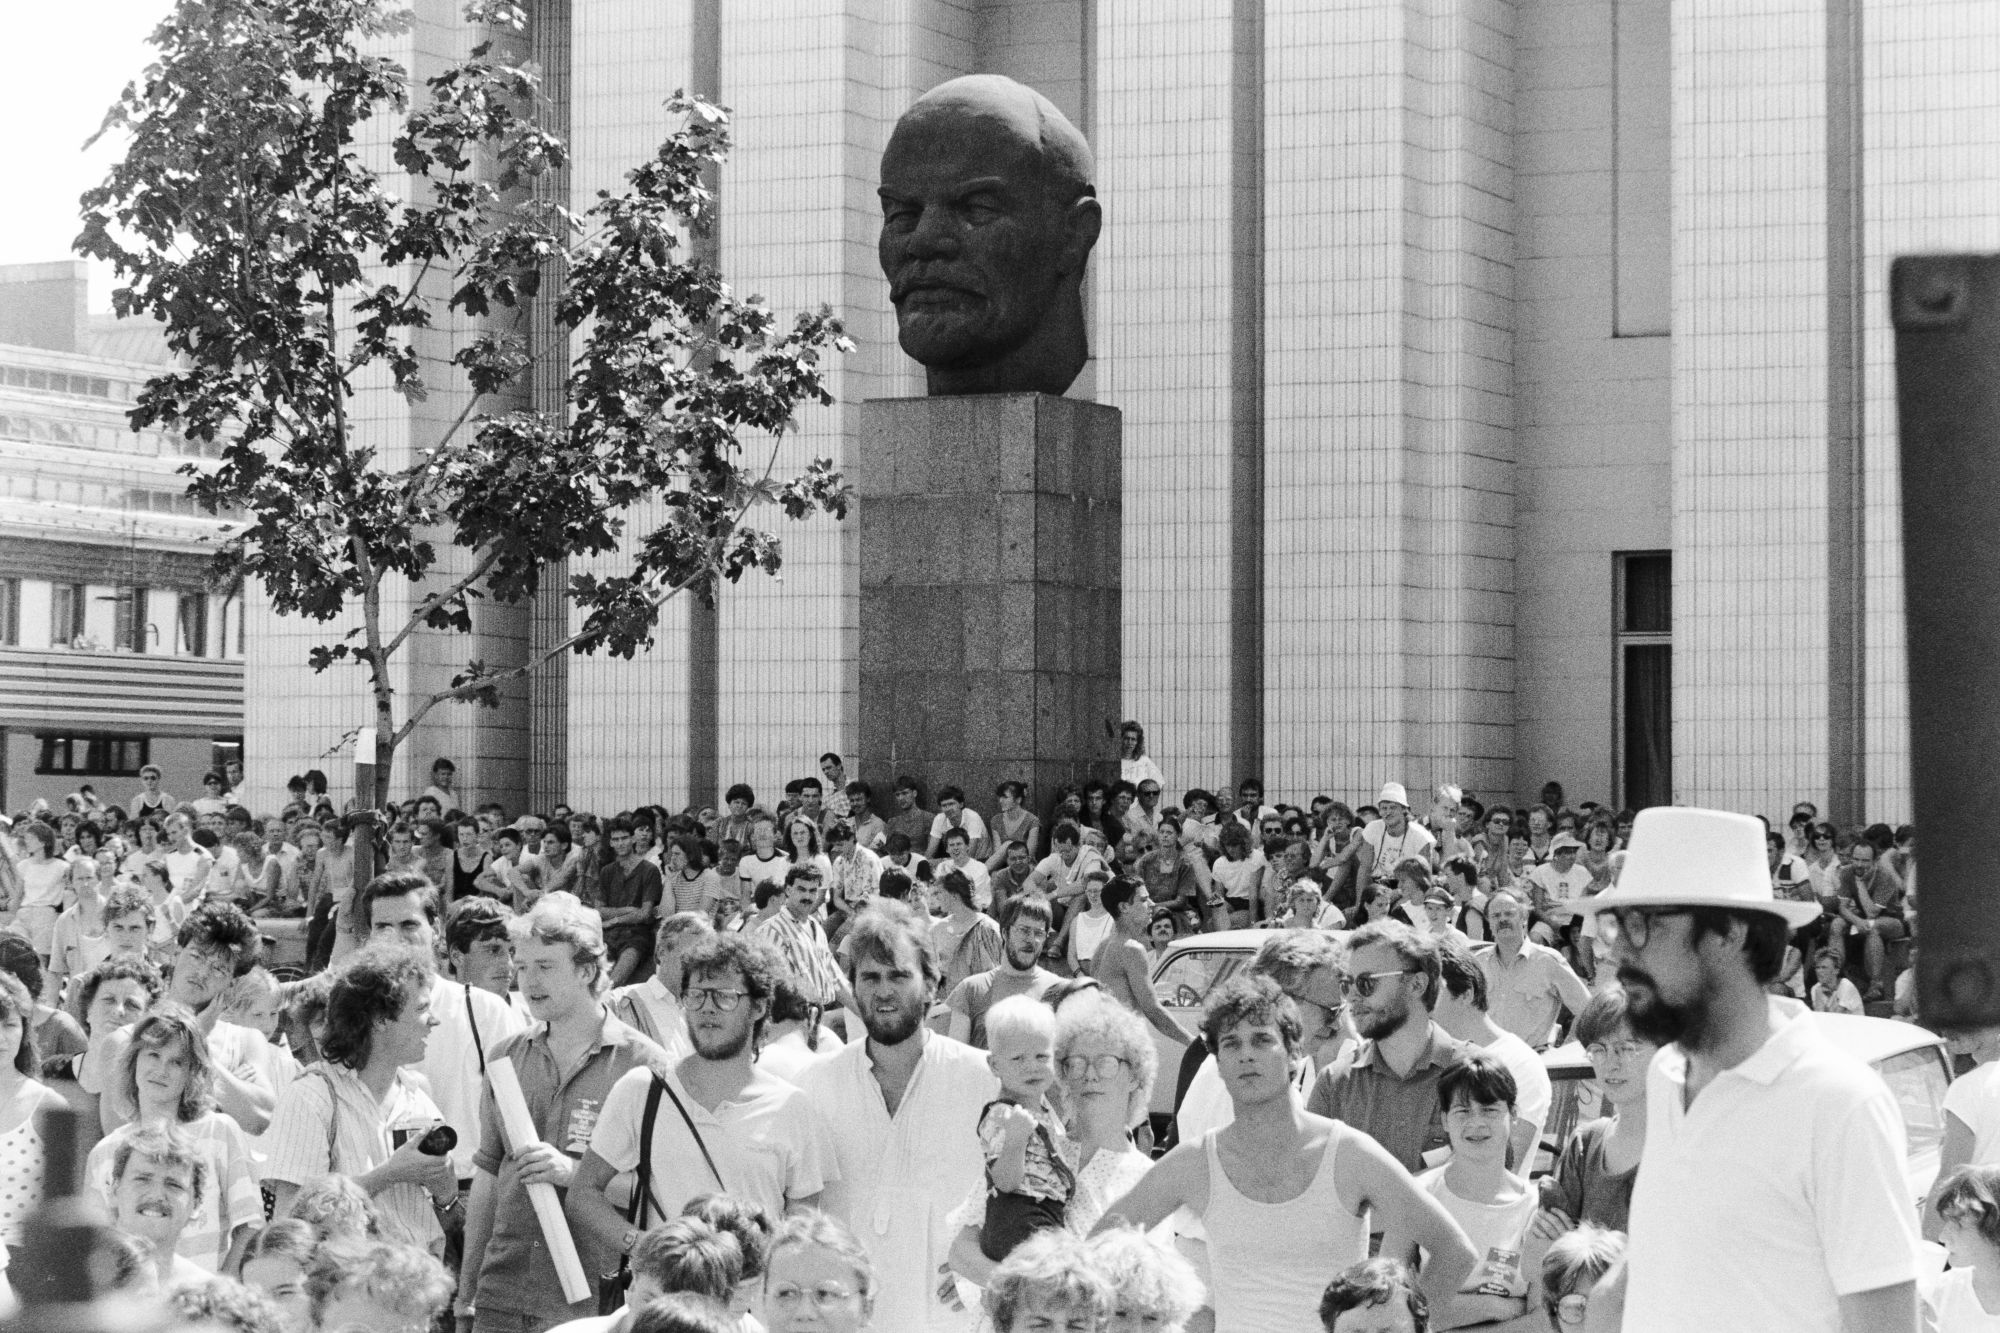 Viele Menschen in weißer Kleidung demonstrieren gemeinsam. Im Hintergrund ist eine Leninbüste zu sehen.